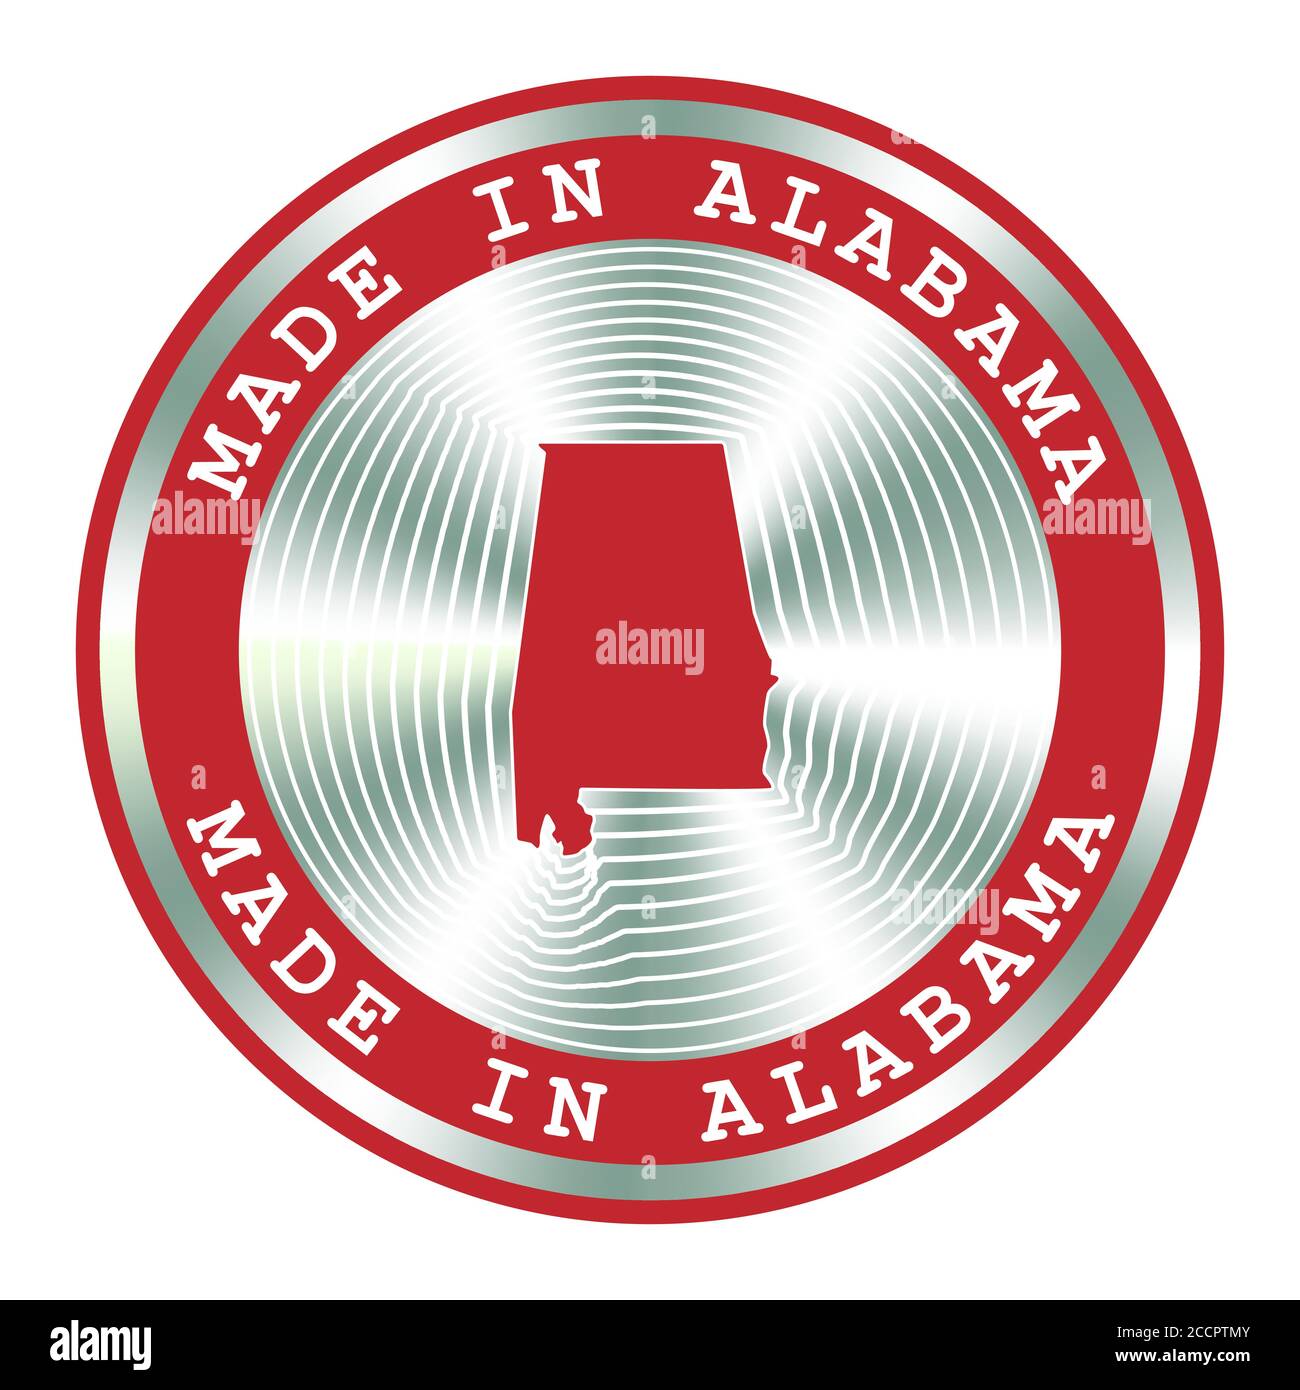 Fabriqué en Alabama panneau de production local, autocollant. Enseigne hologramme ronde pour la conception d'étiquettes et le marketing national Illustration de Vecteur